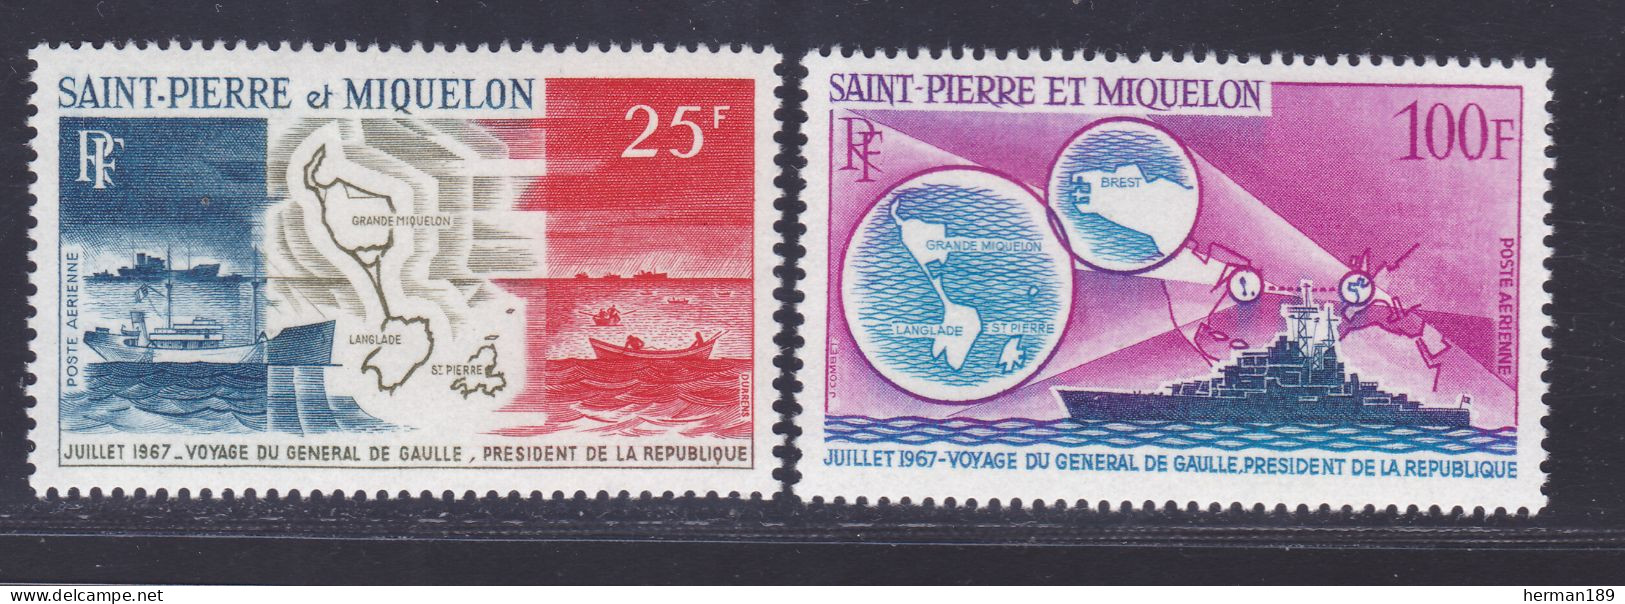 SAINT PIERRE ET MIQUELON AERIENS N°   38 & 39 ** MNH Neufs Sans Charnière, TB (D7690) Voyages De Gaulle - 1967 - Unused Stamps